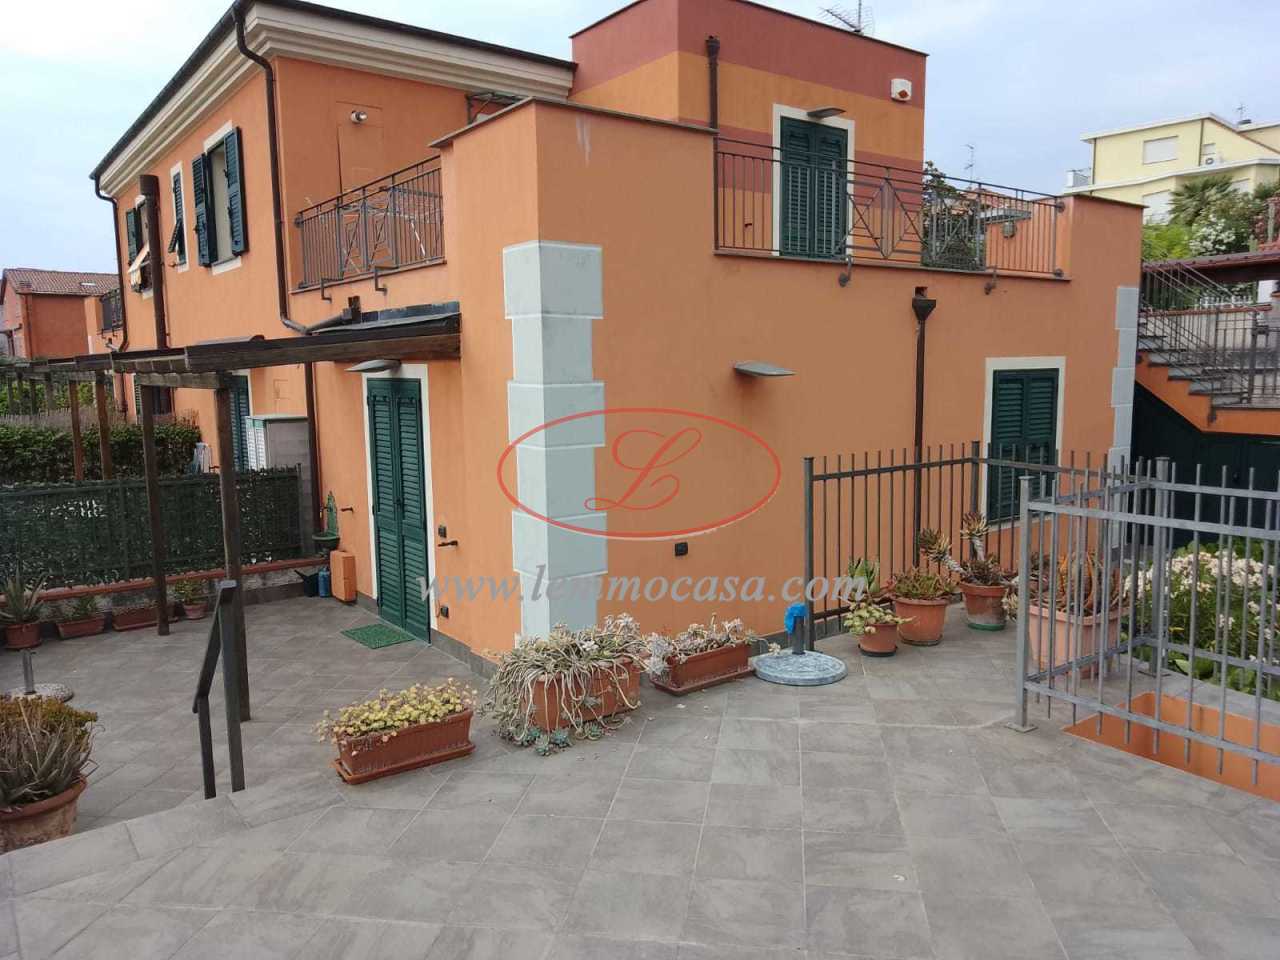 Appartamento in vendita a Diano Marina, 2 locali, prezzo € 190.000 | PortaleAgenzieImmobiliari.it